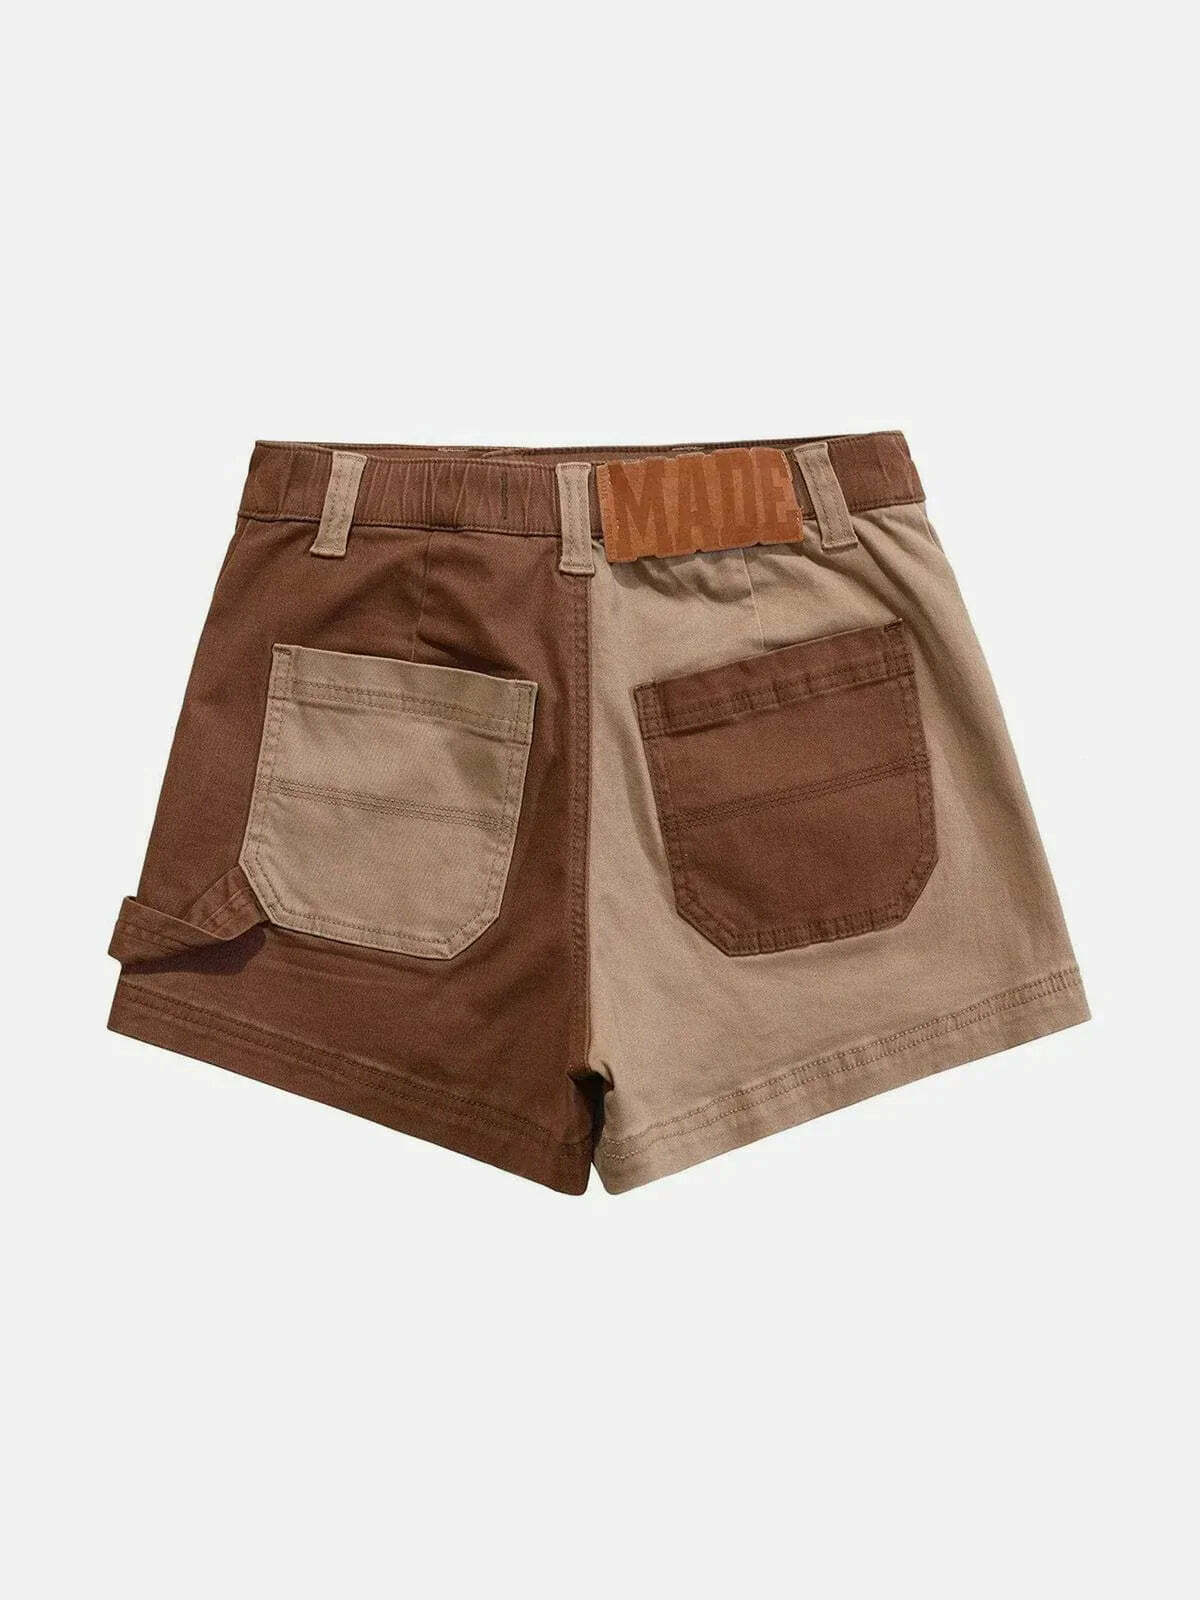 patchwork retro denim shorts edgy streetwear essential 6732